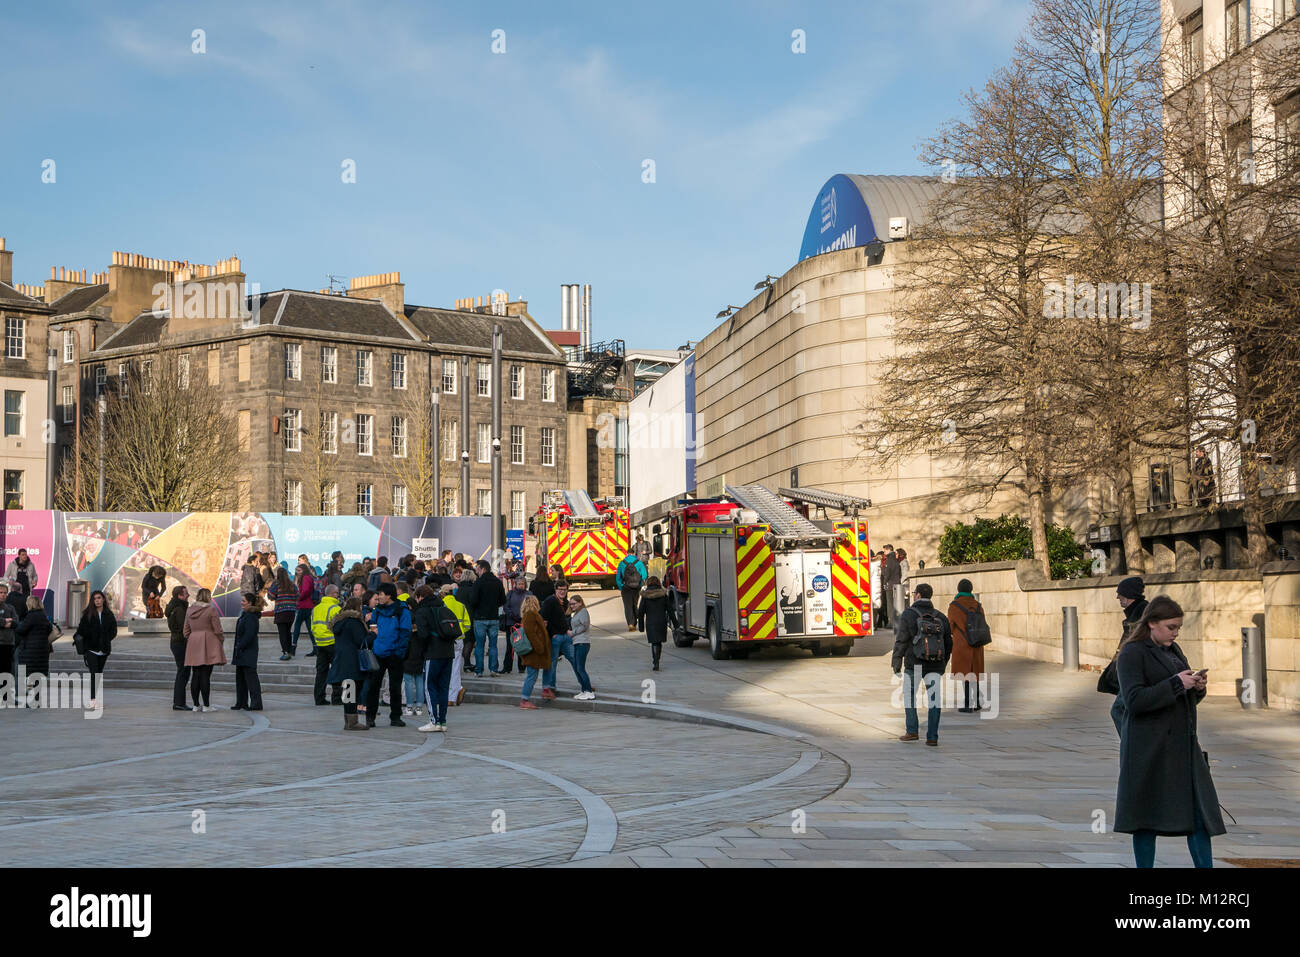 Les pompiers assistant à une fausse alarme à Potterow University of Edinburgh Students Association, Bisto Square, Edinburgh, Écosse, Royaume-Uni Banque D'Images